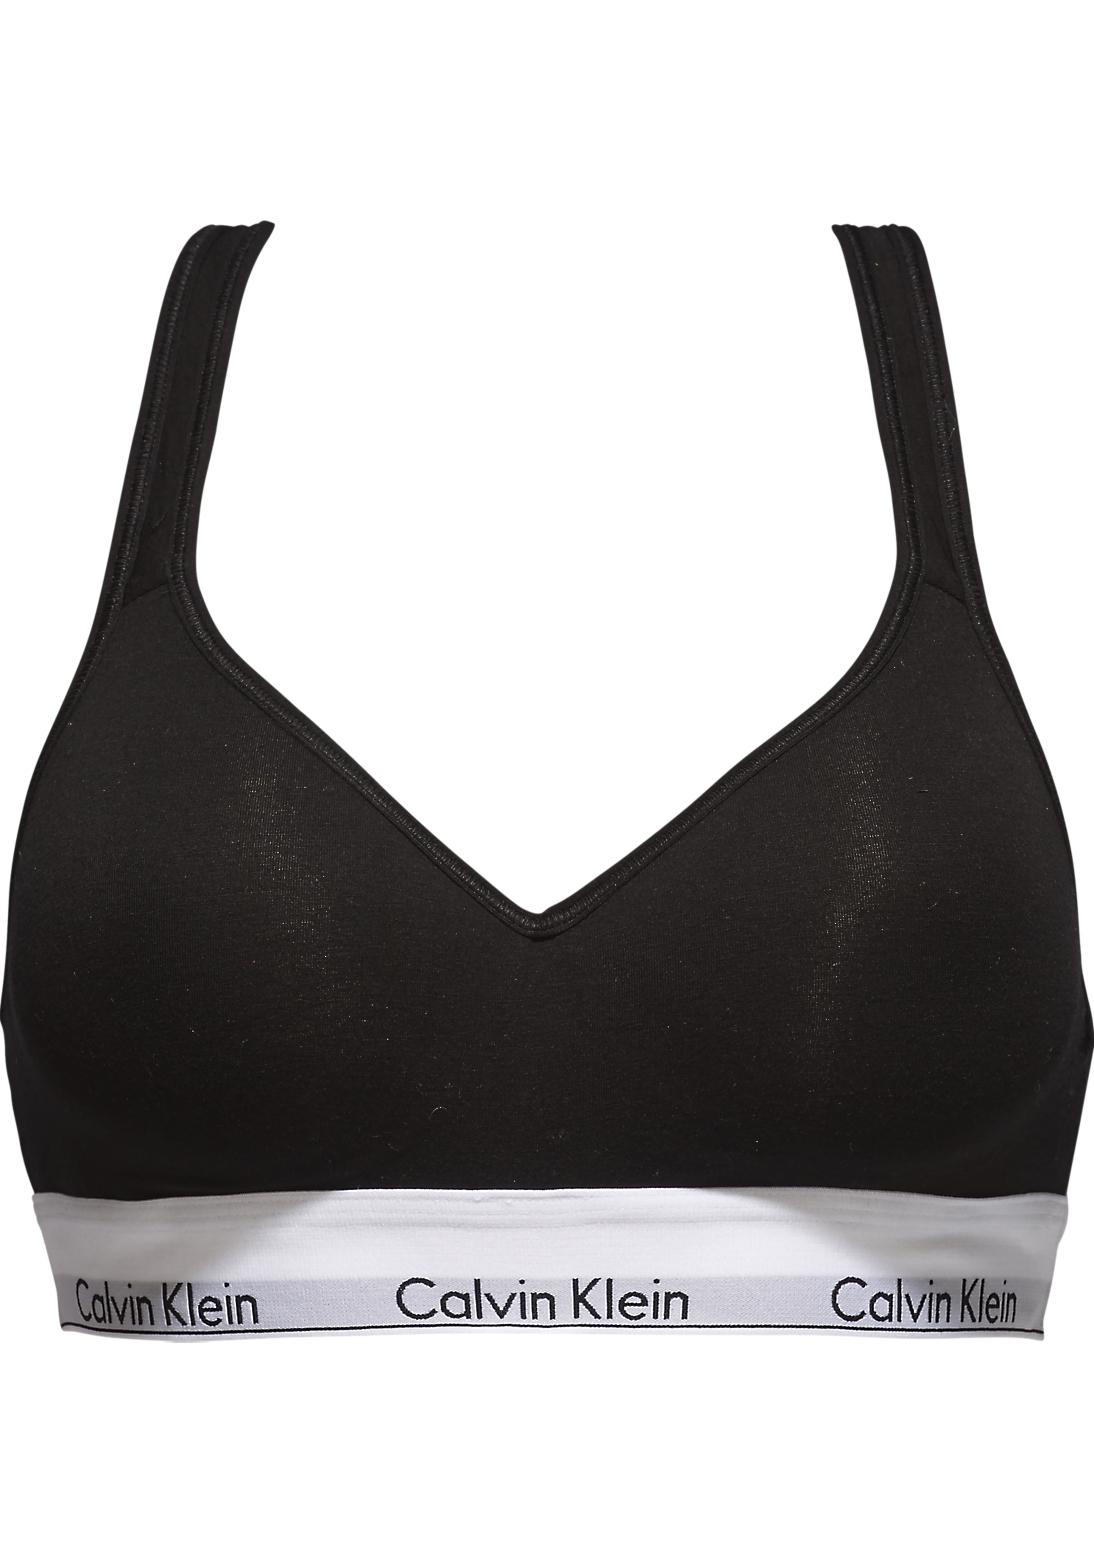 Ontspannend Haalbaar praktijk Calvin Klein dames Modern Cotton bralette top, met voorgevormde cups, zwart  - Shop de nieuwste voorjaarsmode